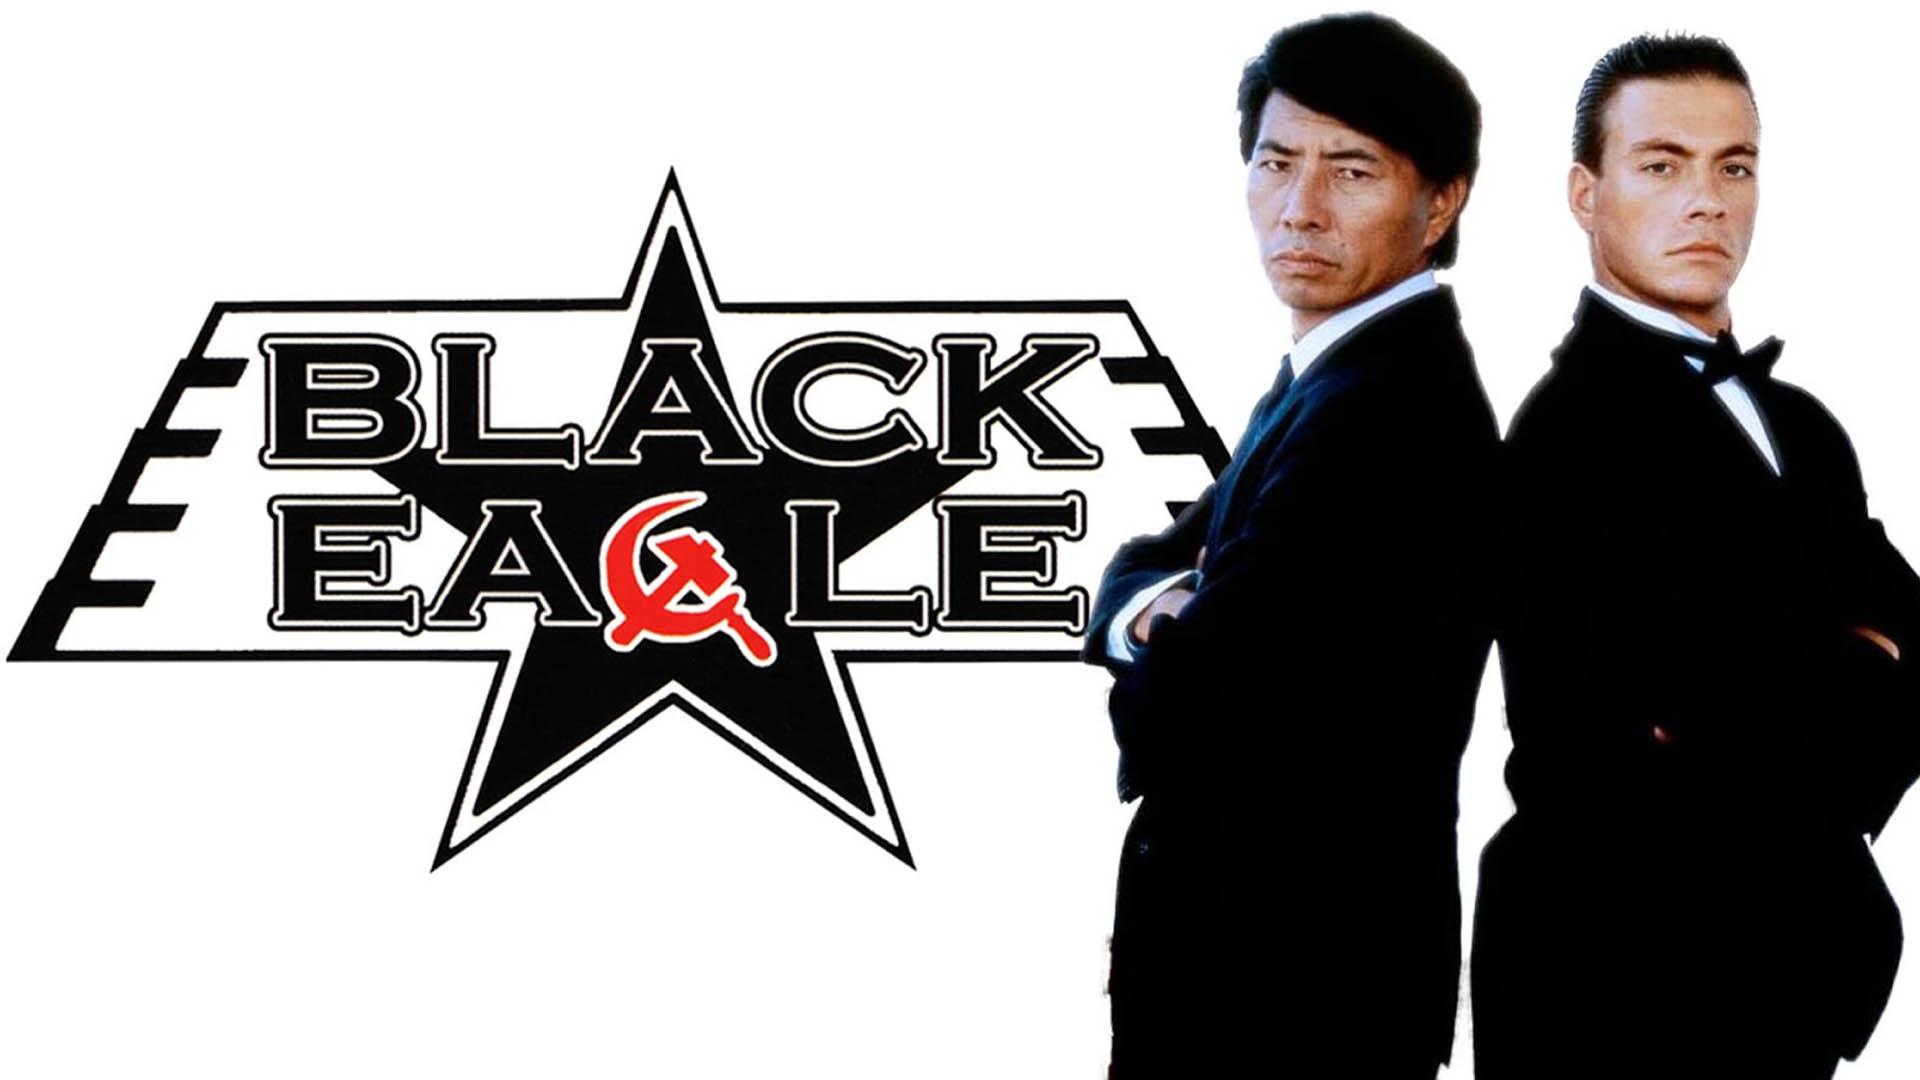 ژان کلود ون دم و کین کوساگی در فیلم Black Eagle